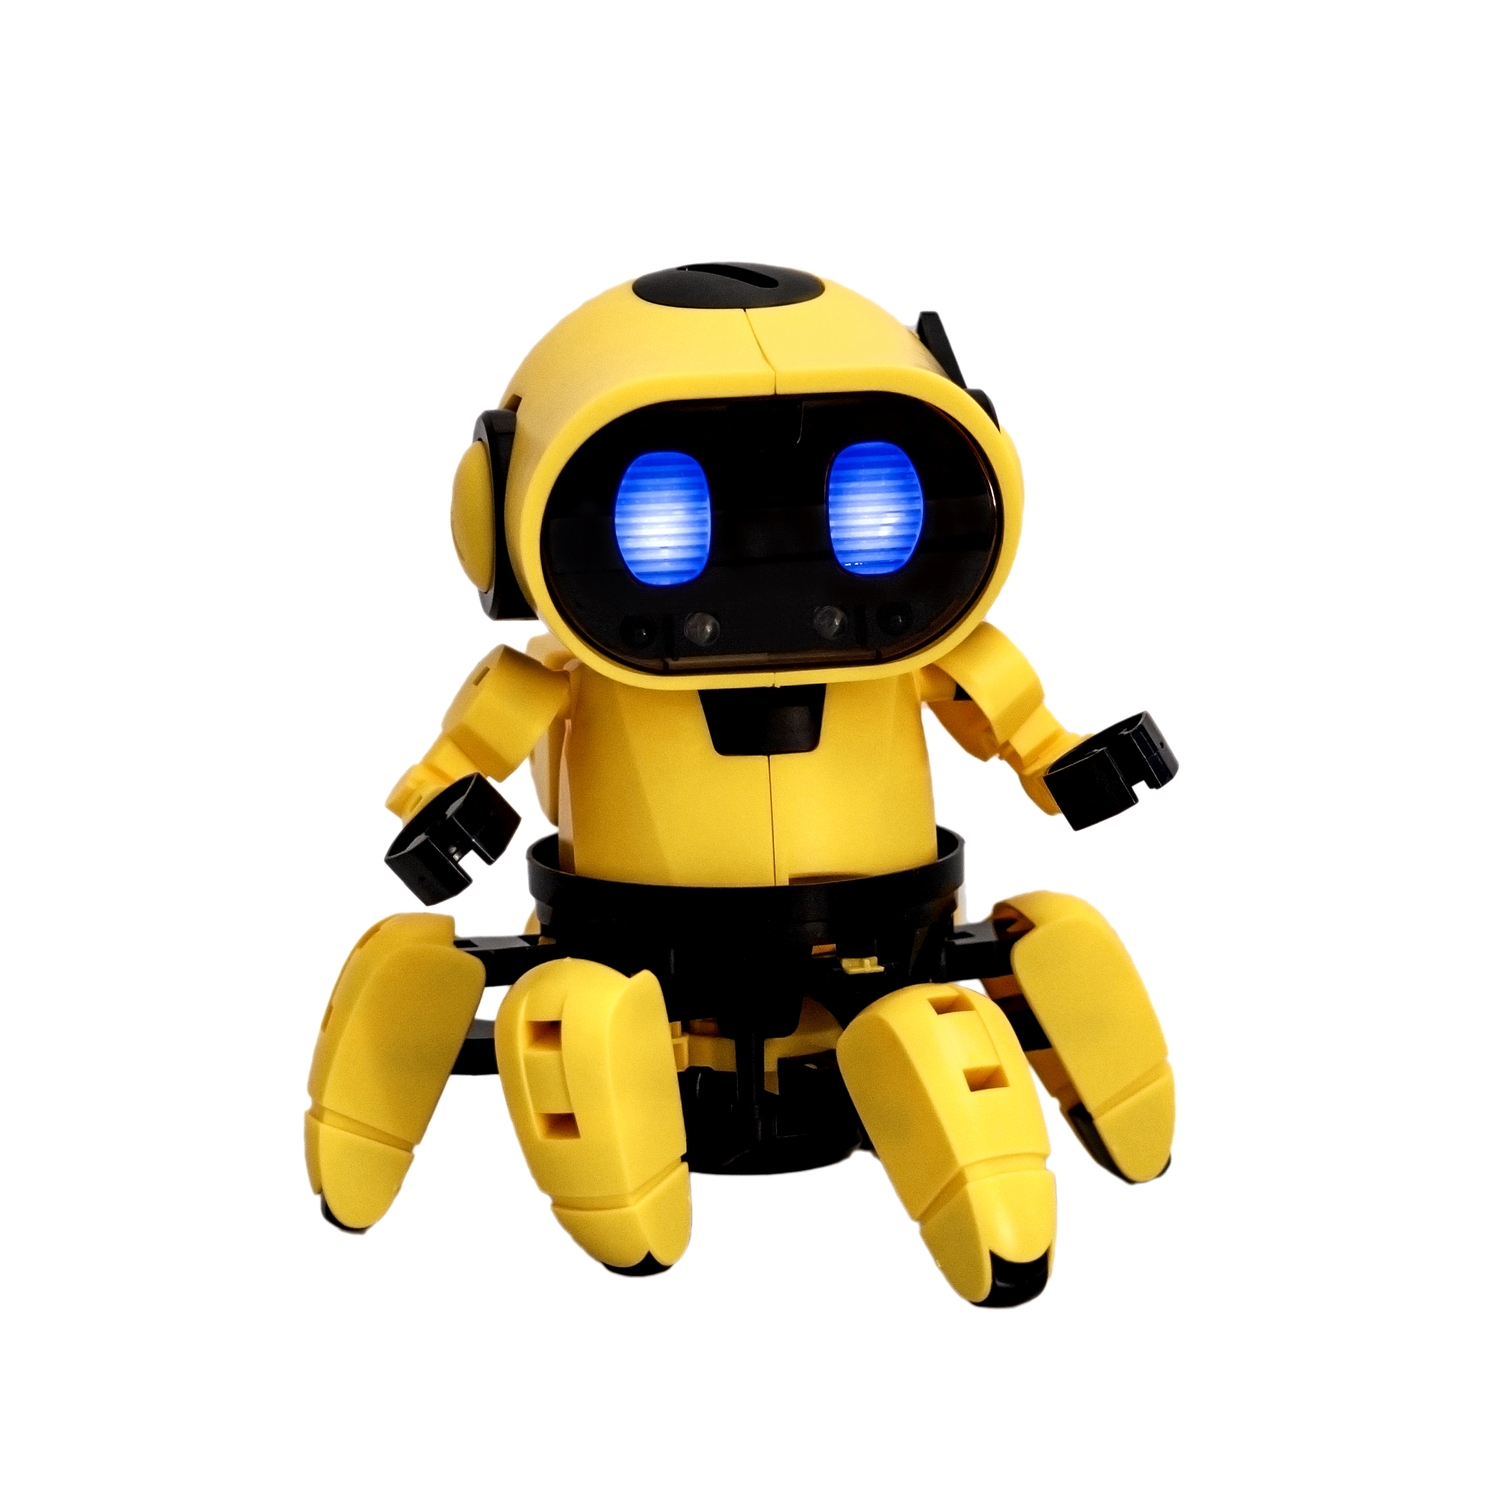 Робототехника Bondibon Робот Тобби 21-893